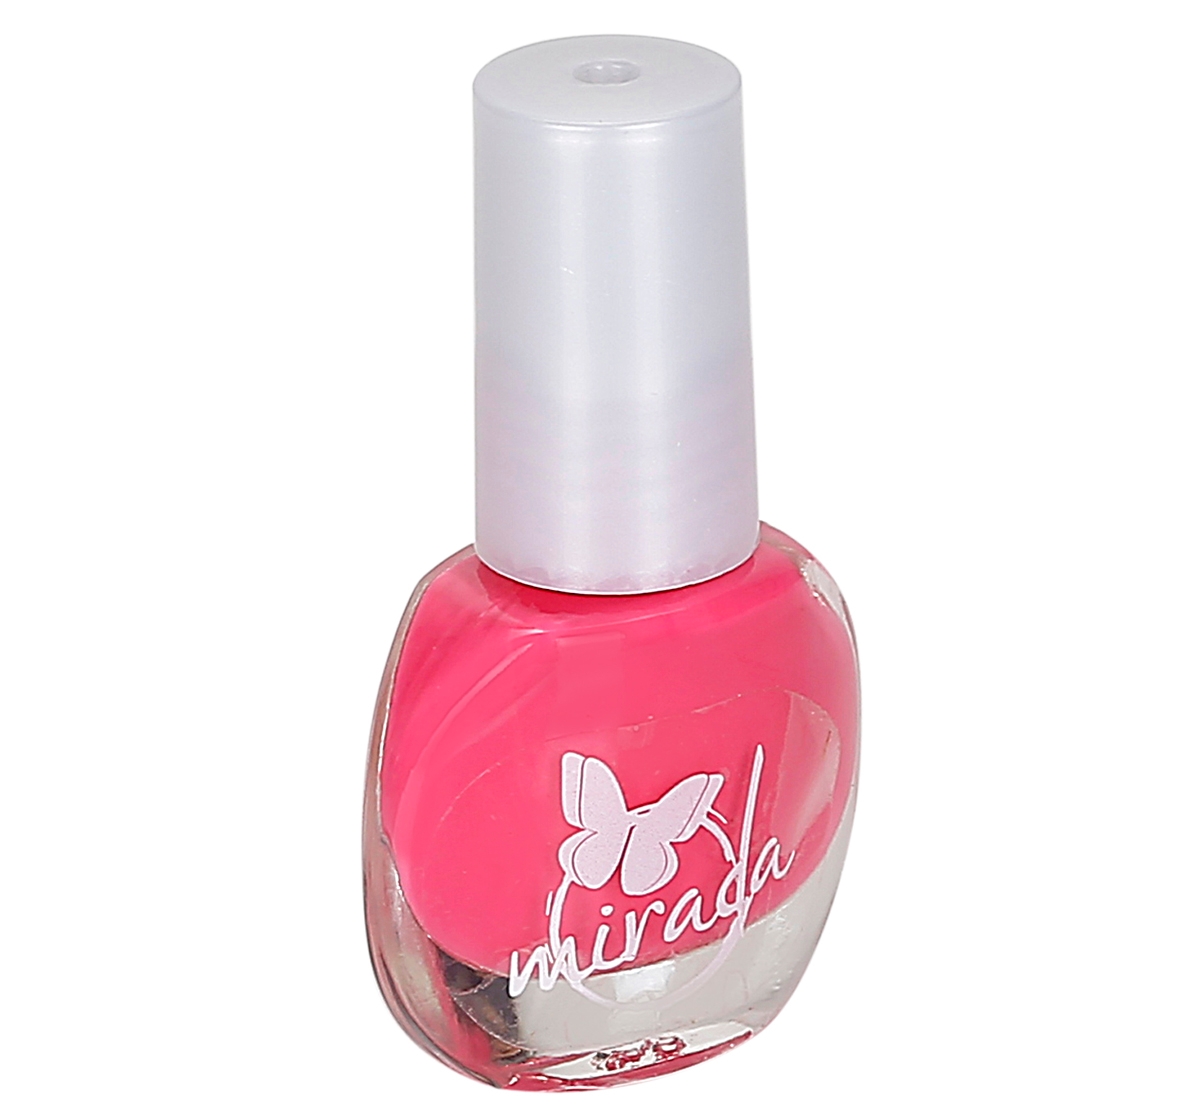 Mirada 3.8Ml Nail Polish for kids 3Y+, Pink